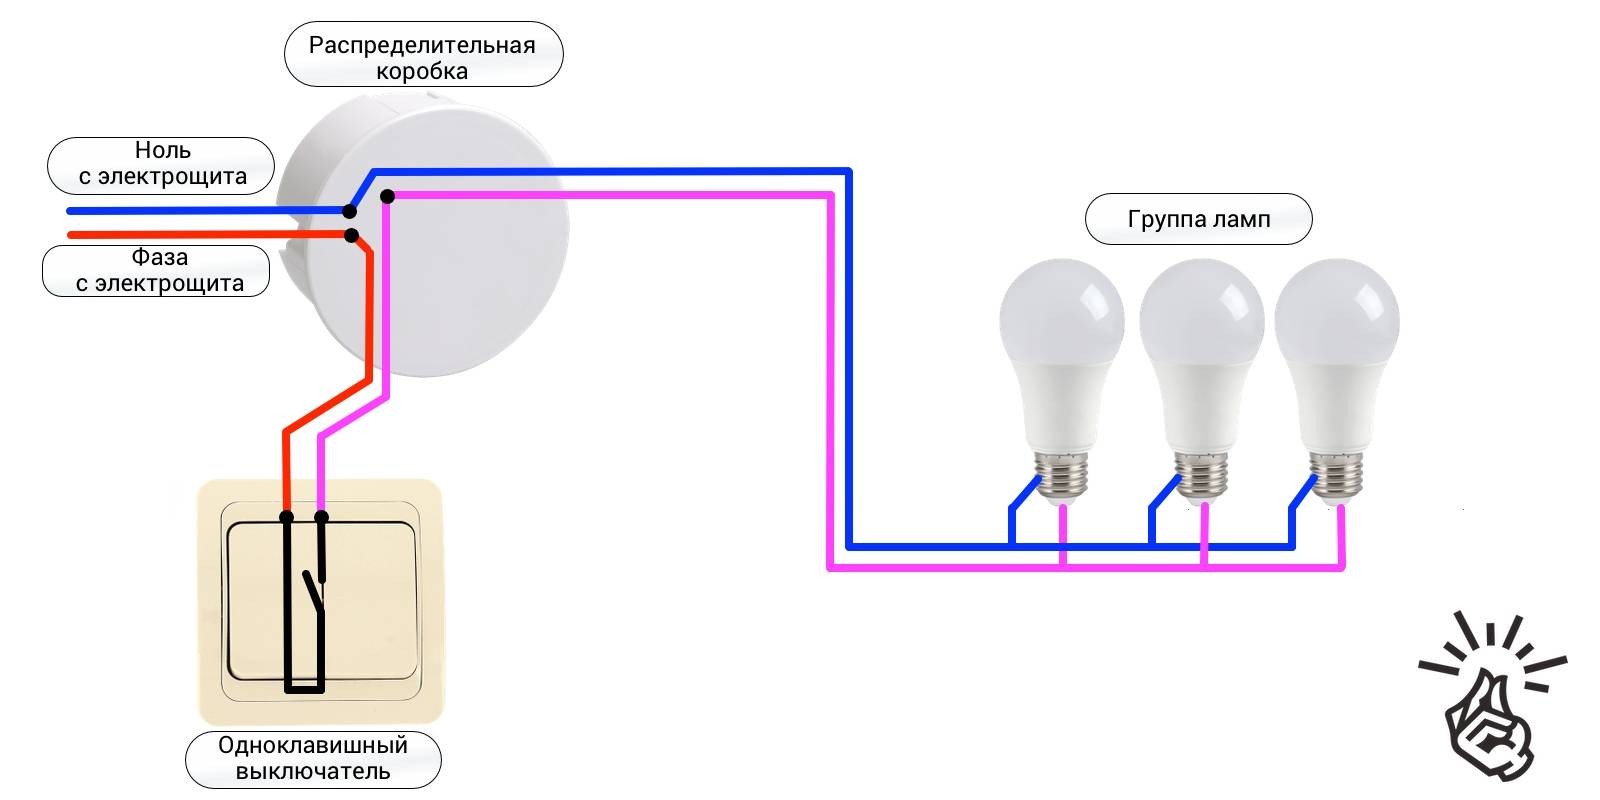 Как подключить выключатель с подсветкой: виды, правила, конструкция